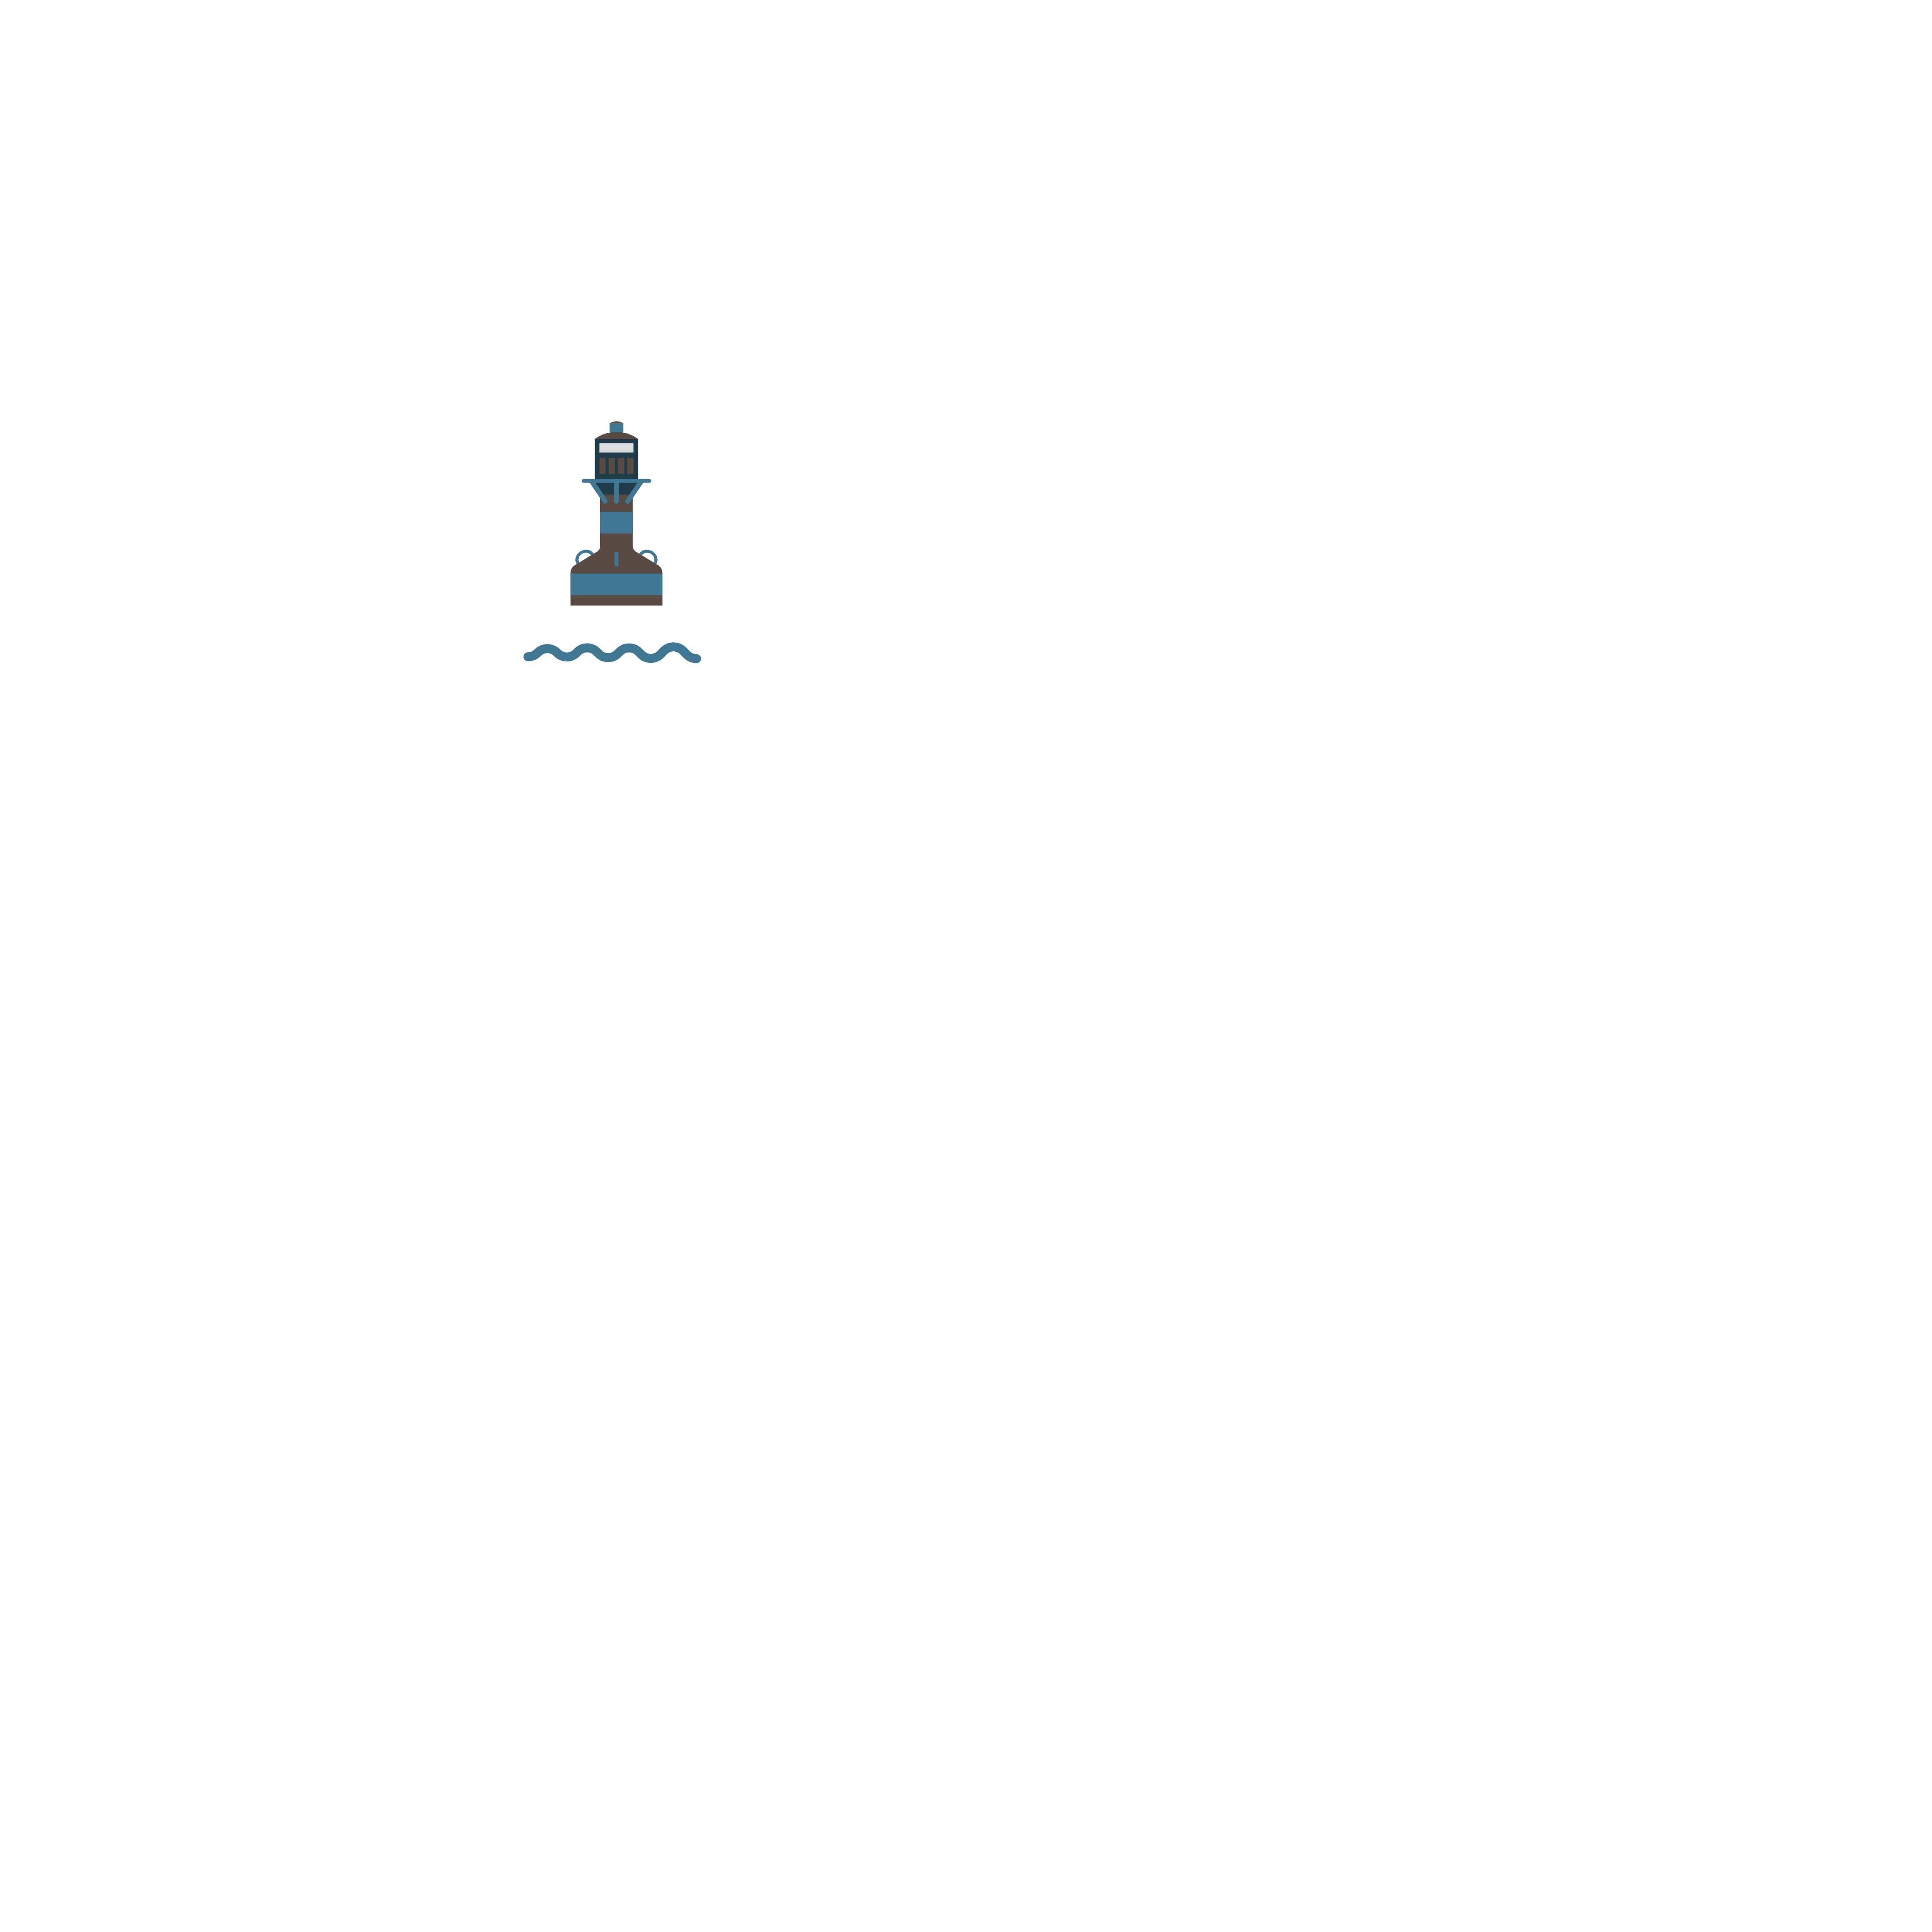 Timeline 2021